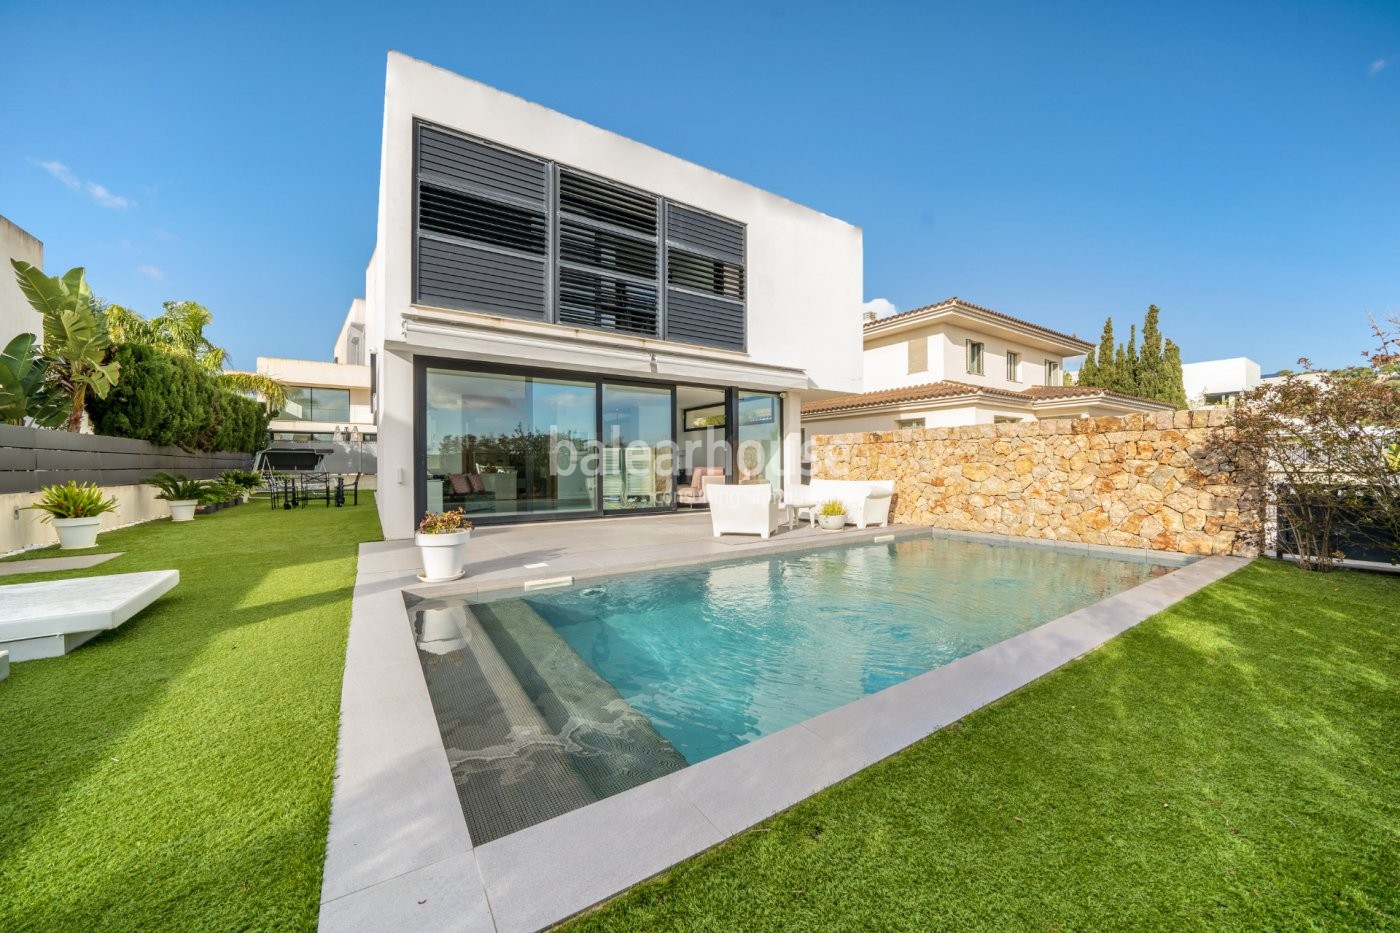 Excelente chalet luminoso y moderno con jardín y piscina ubicado en un entorno verde de Palma.